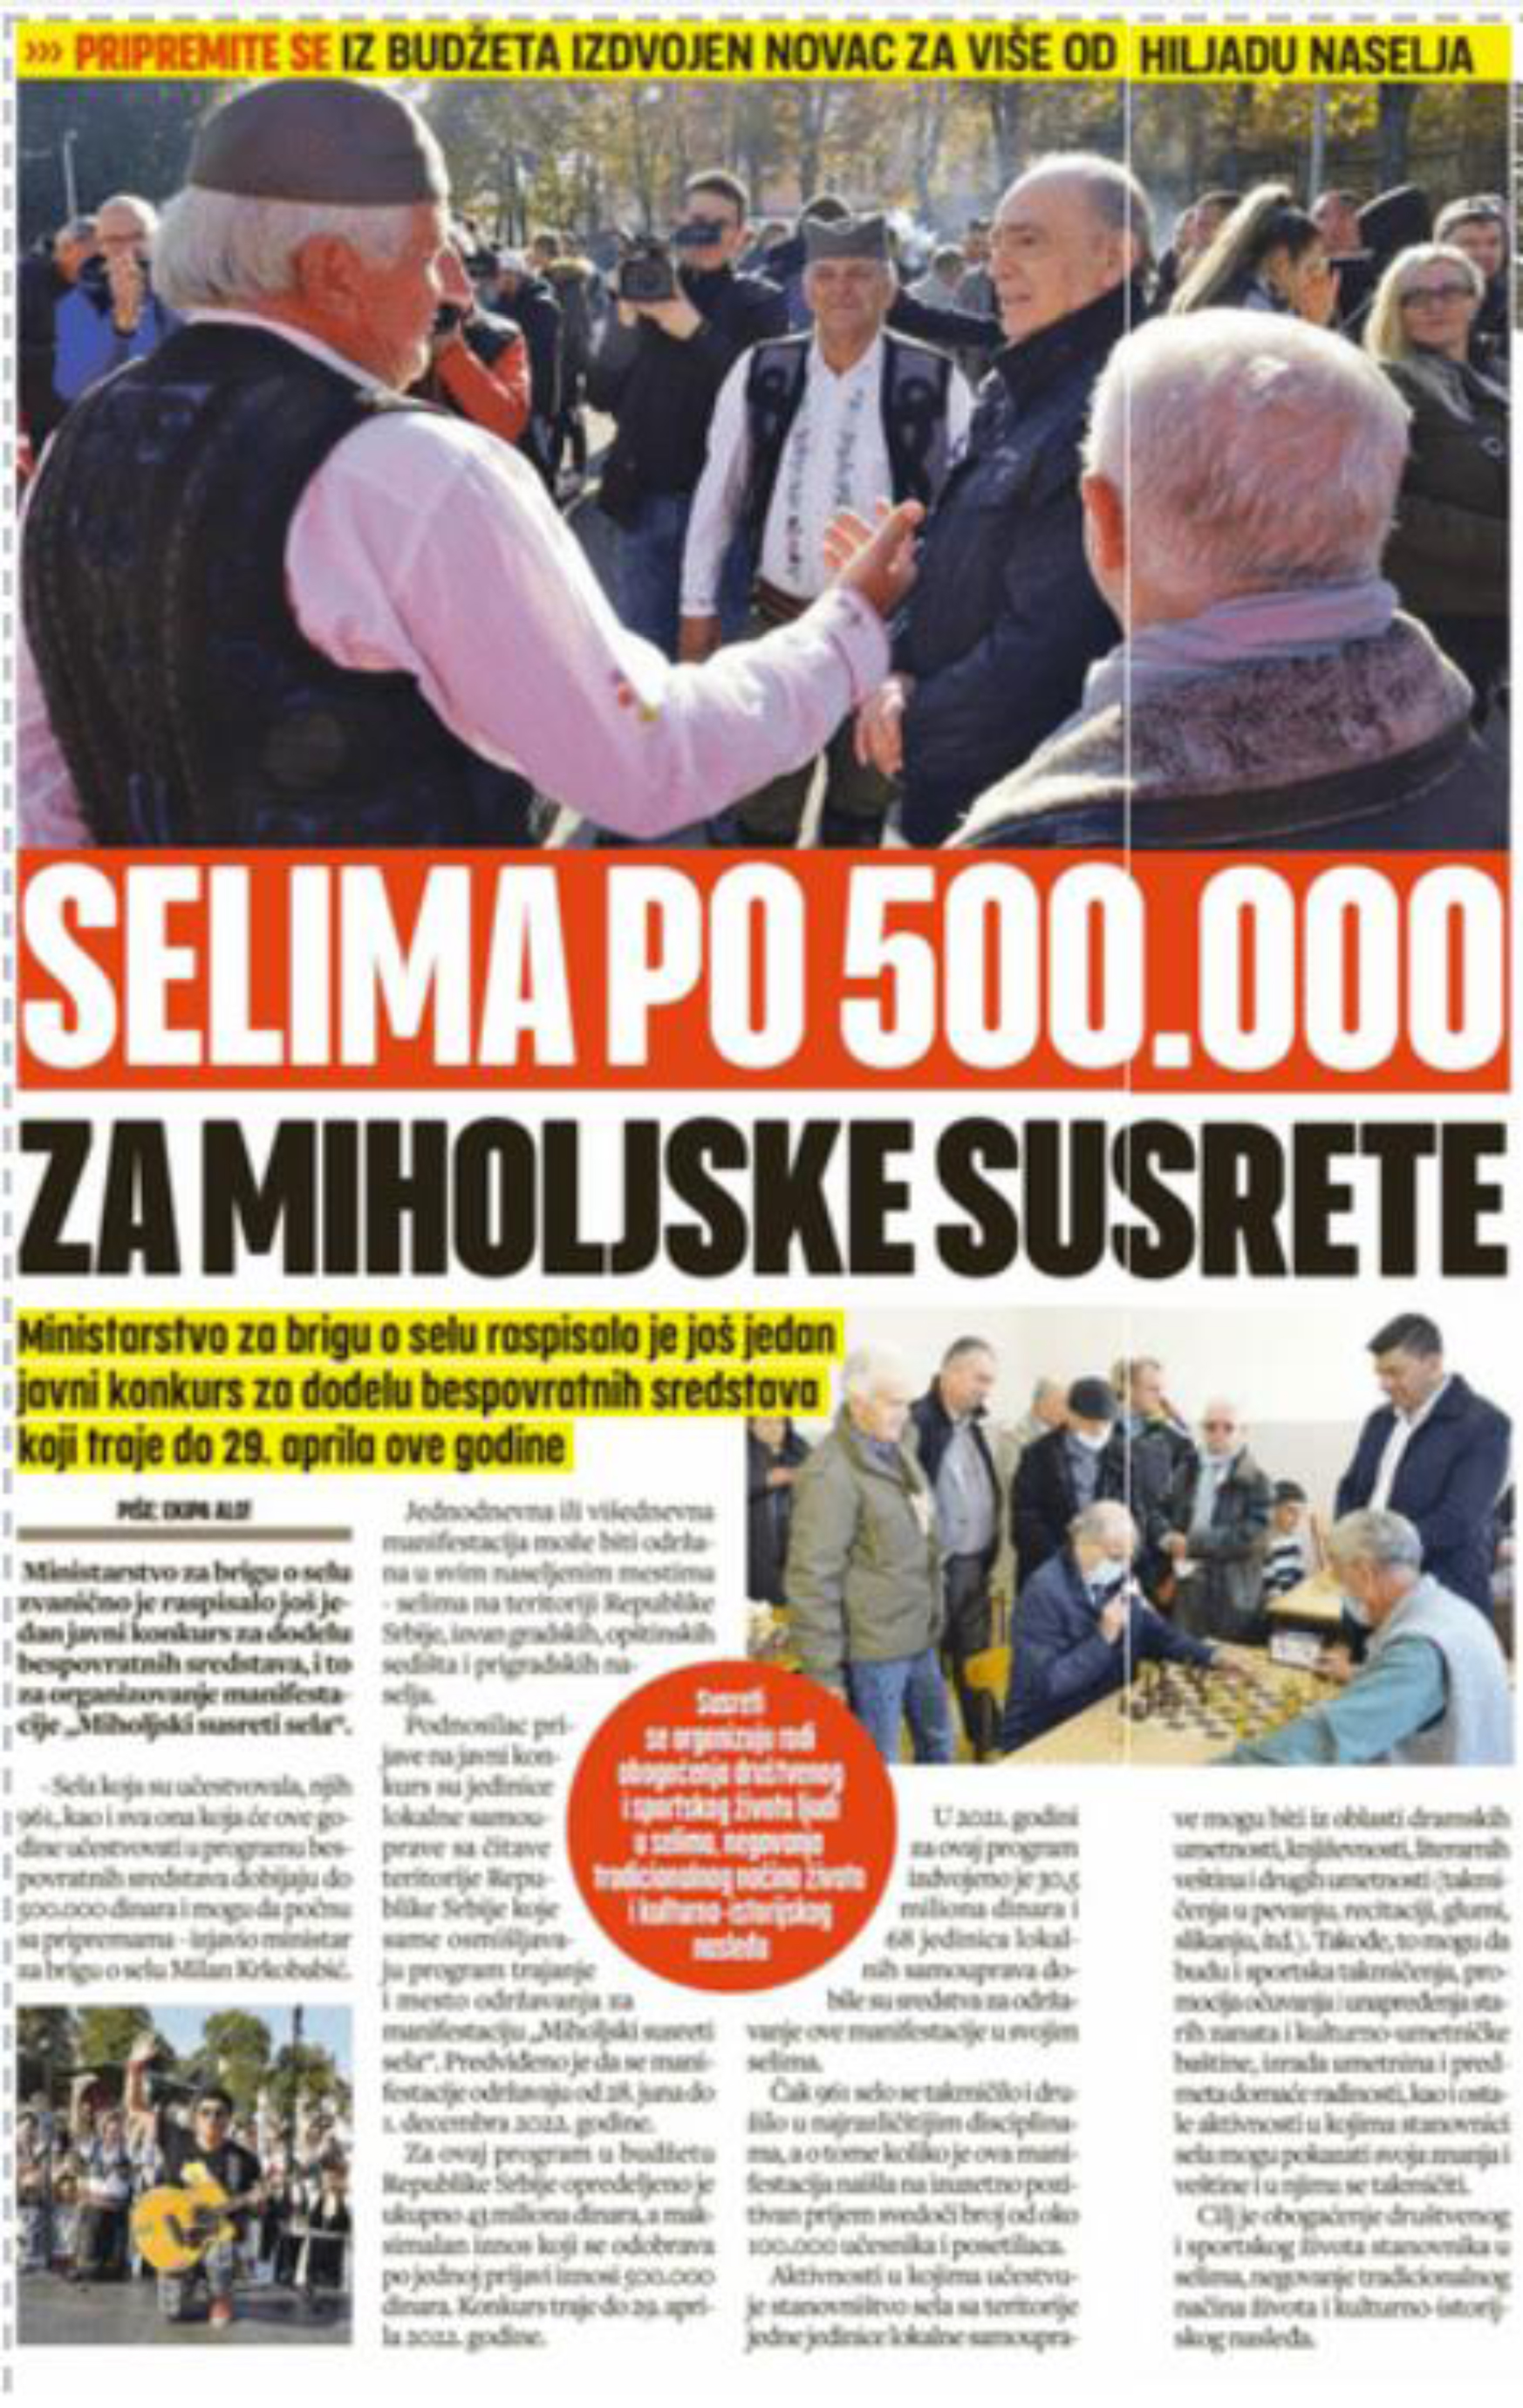  Selima po 500.000 za Miholjske susrete 